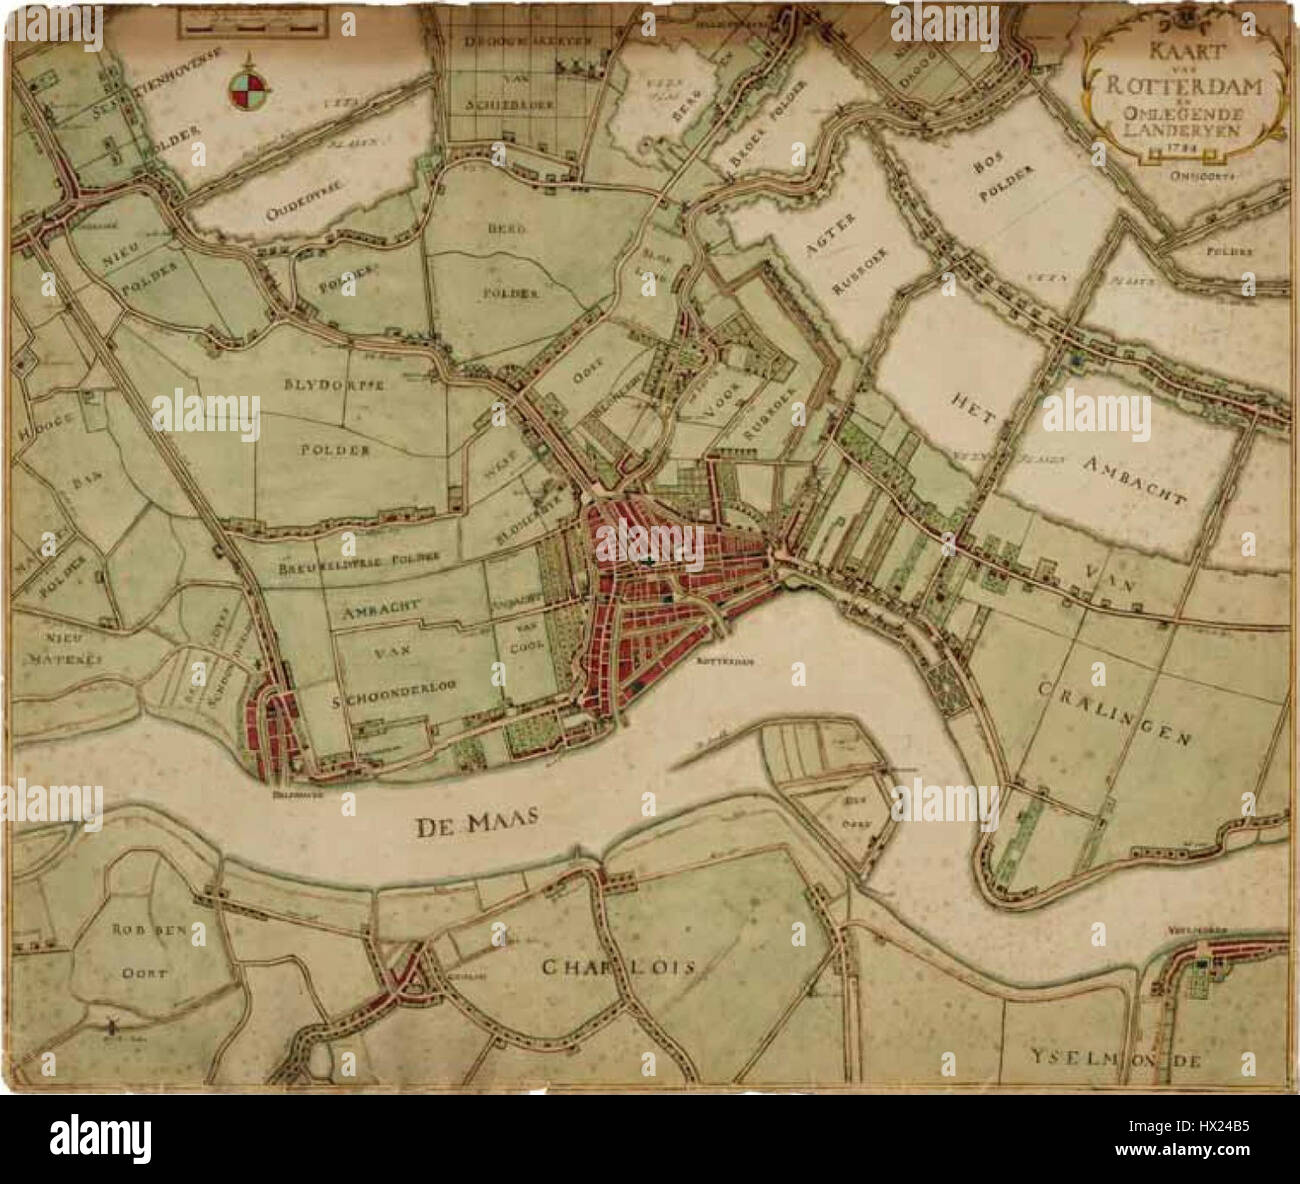 Kaart van Rotterdam en omliggende landerijen, 18e eeuw Stock Photo